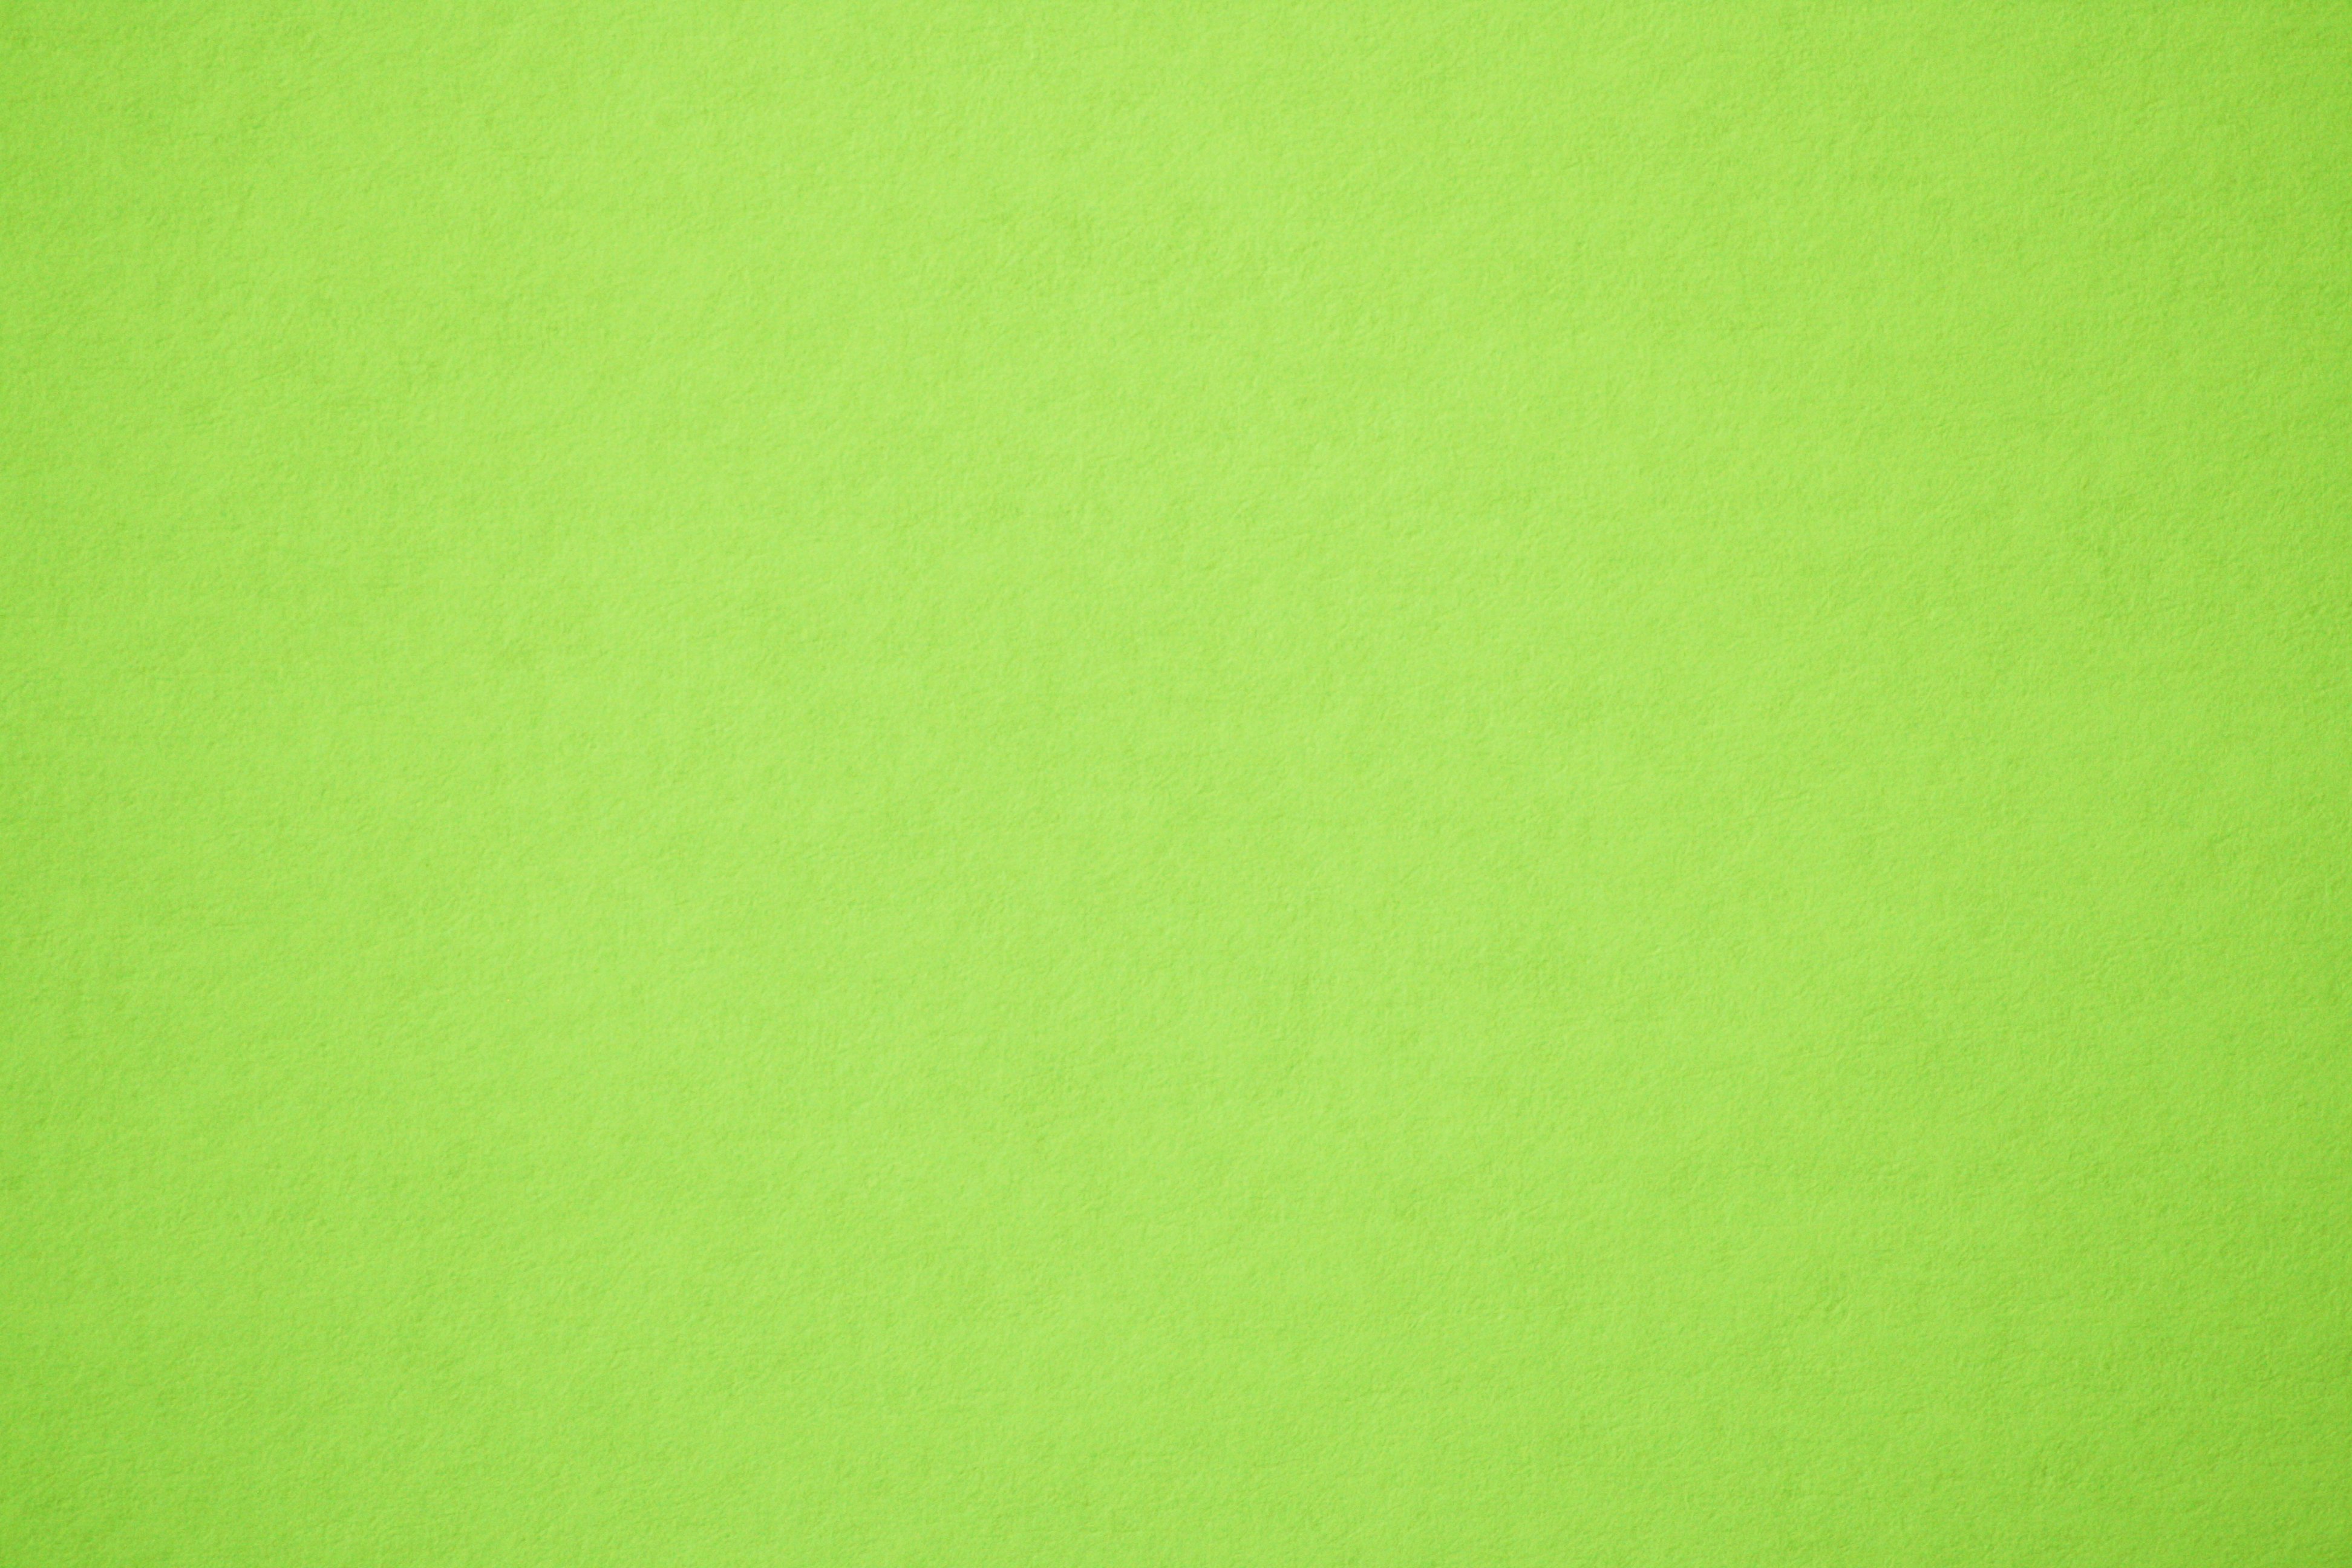 Lime Green Paper Texture Picture Photograph Photos Public